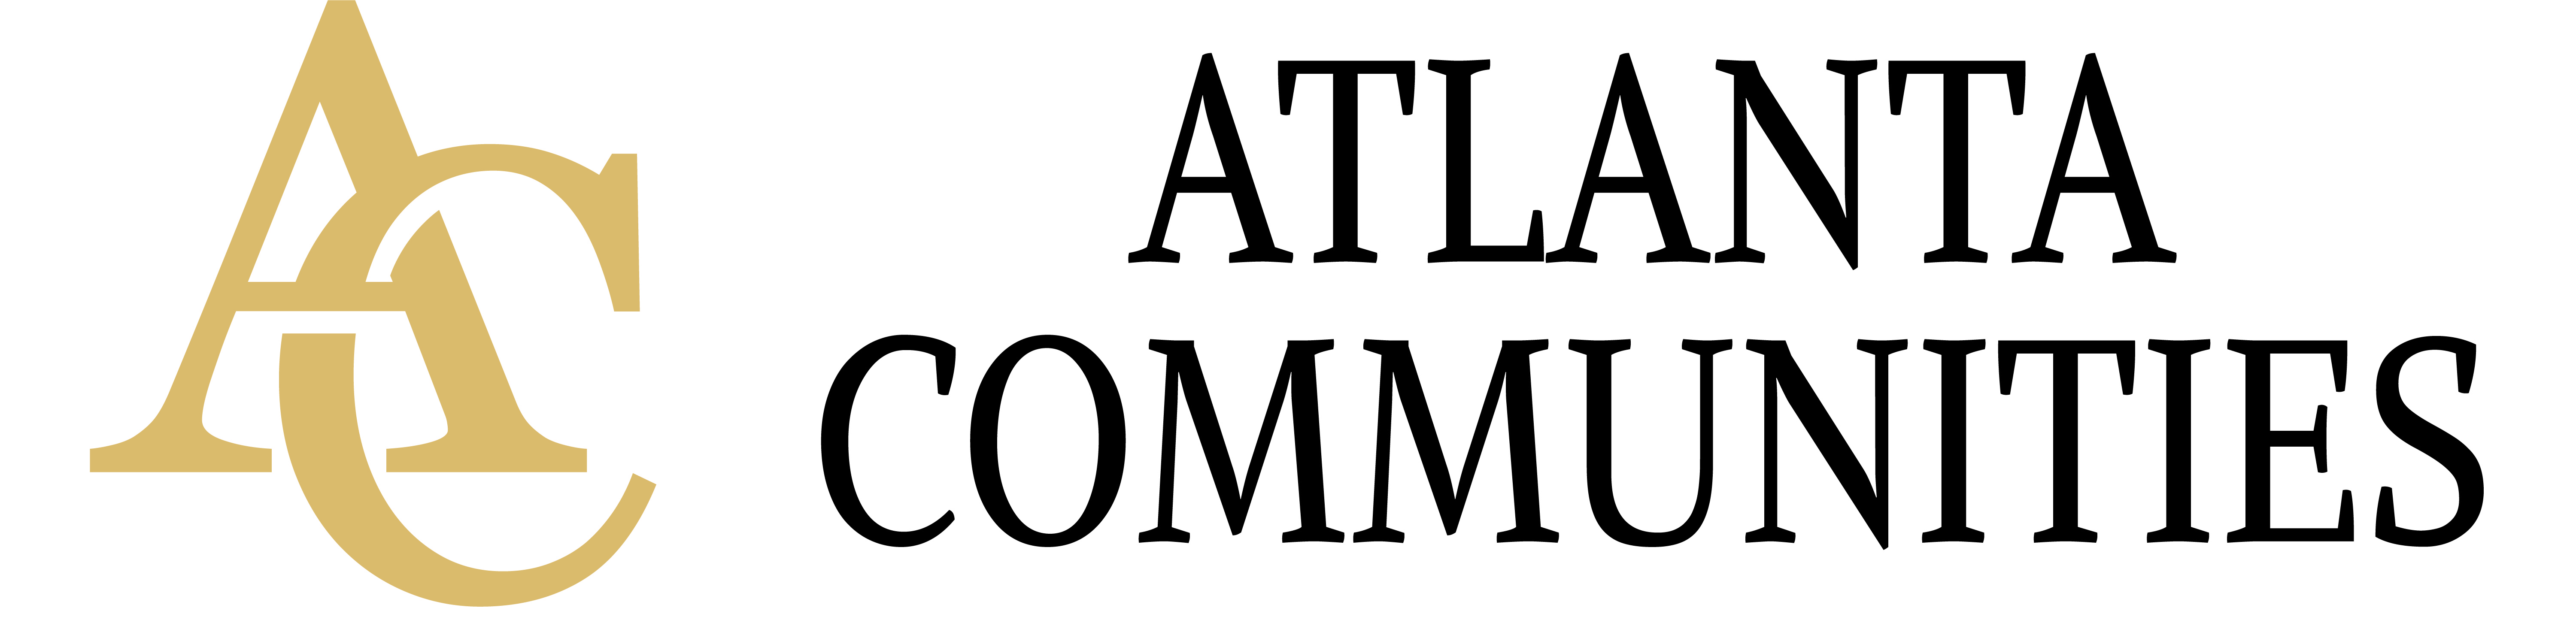 Atlanta Communities